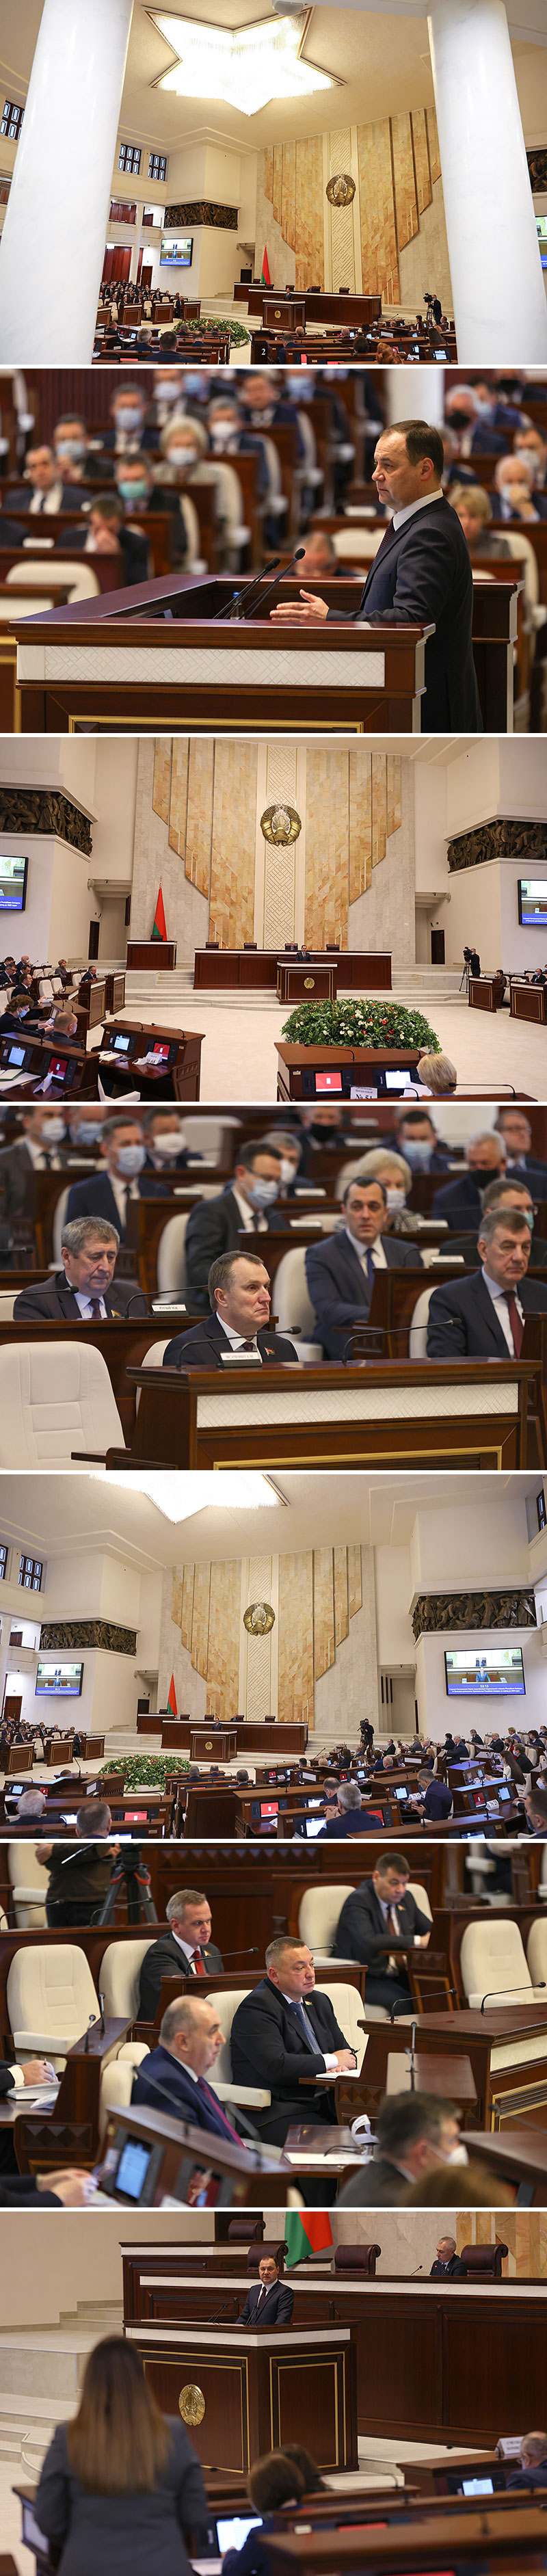 Прэм'ер-міністр Раман Галоўчанка прадстаўляе ў Палаце прадстаўнікоў праграму дзейнасці ўрада да 2025 года